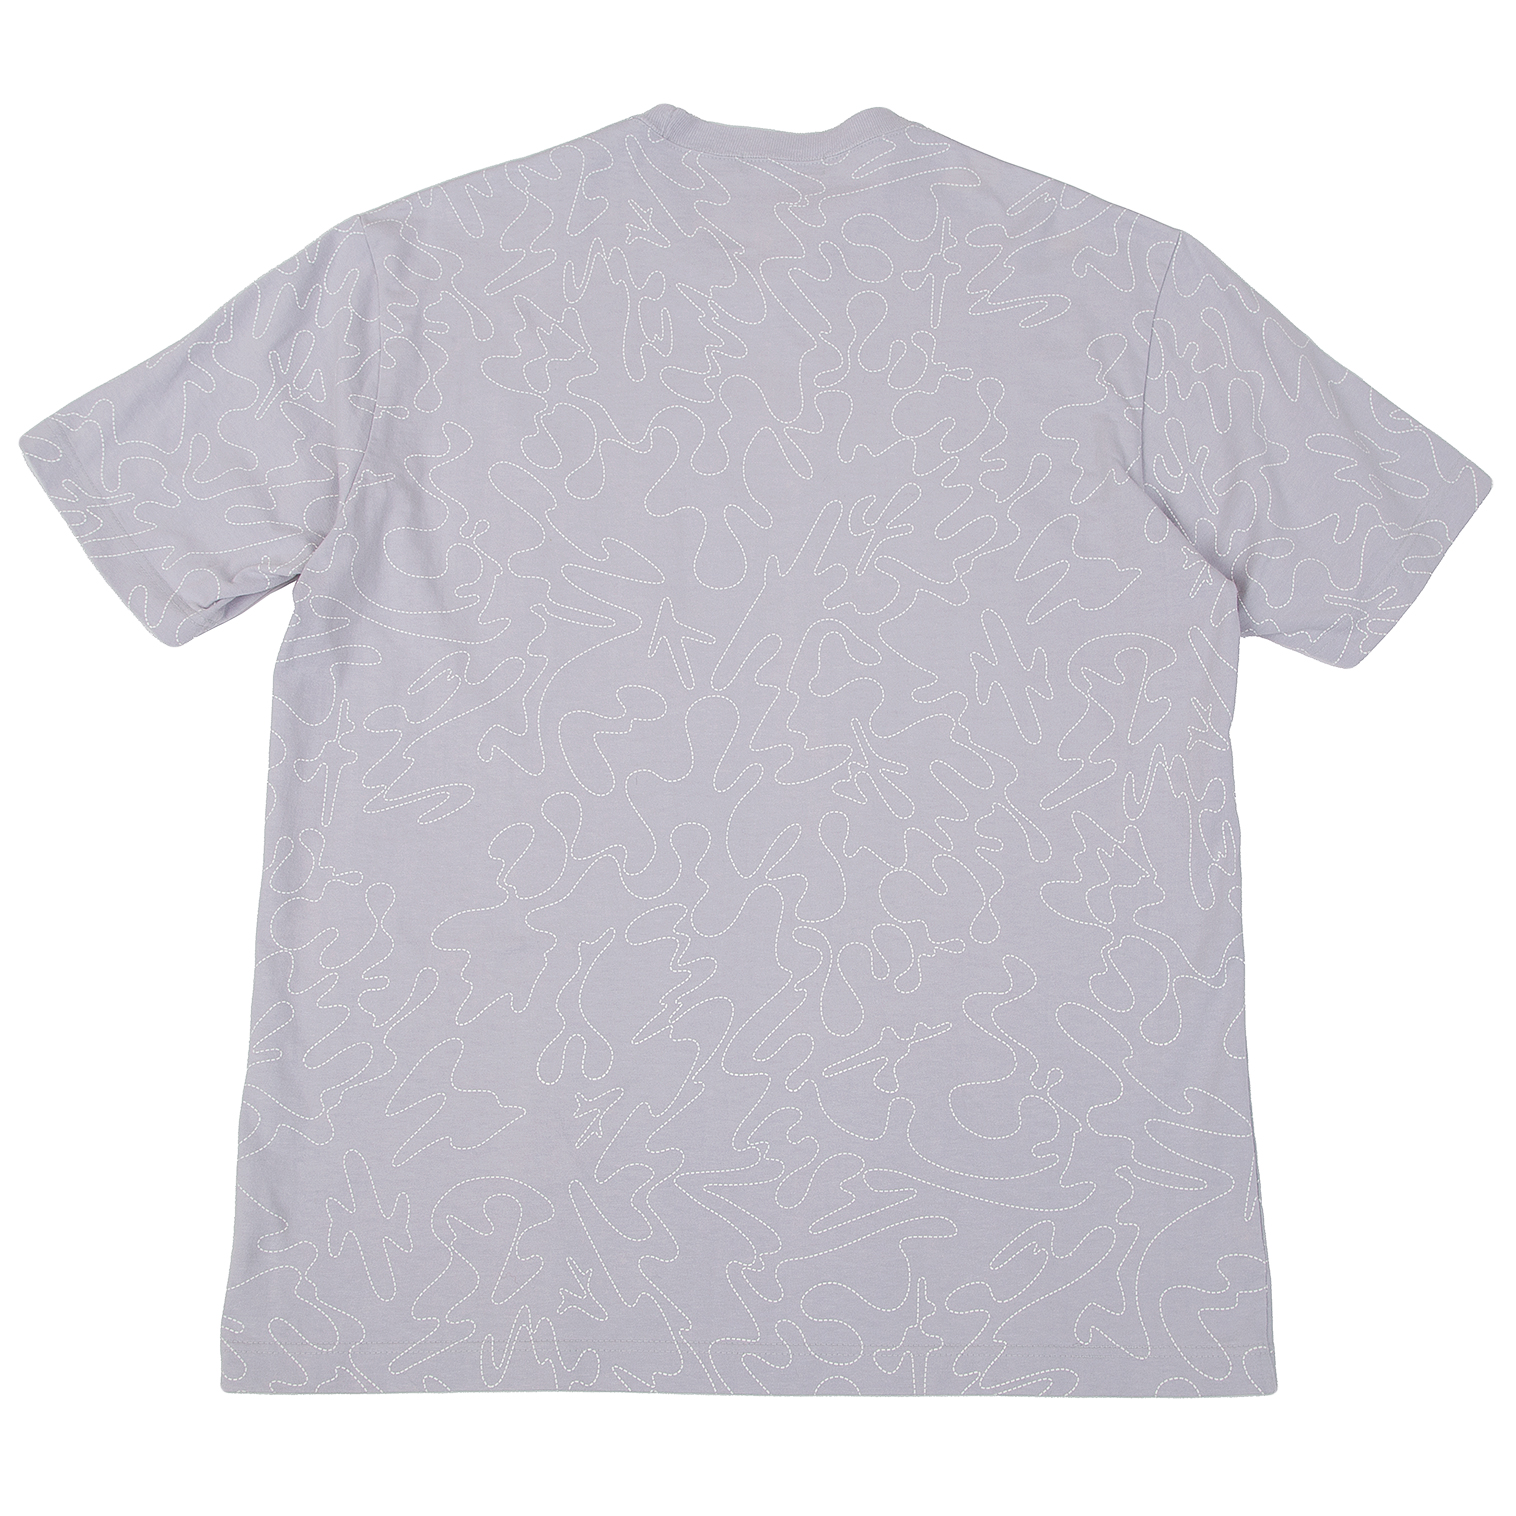 村上隆×vans コラボTシャツ - Tシャツ/カットソー(半袖/袖なし)